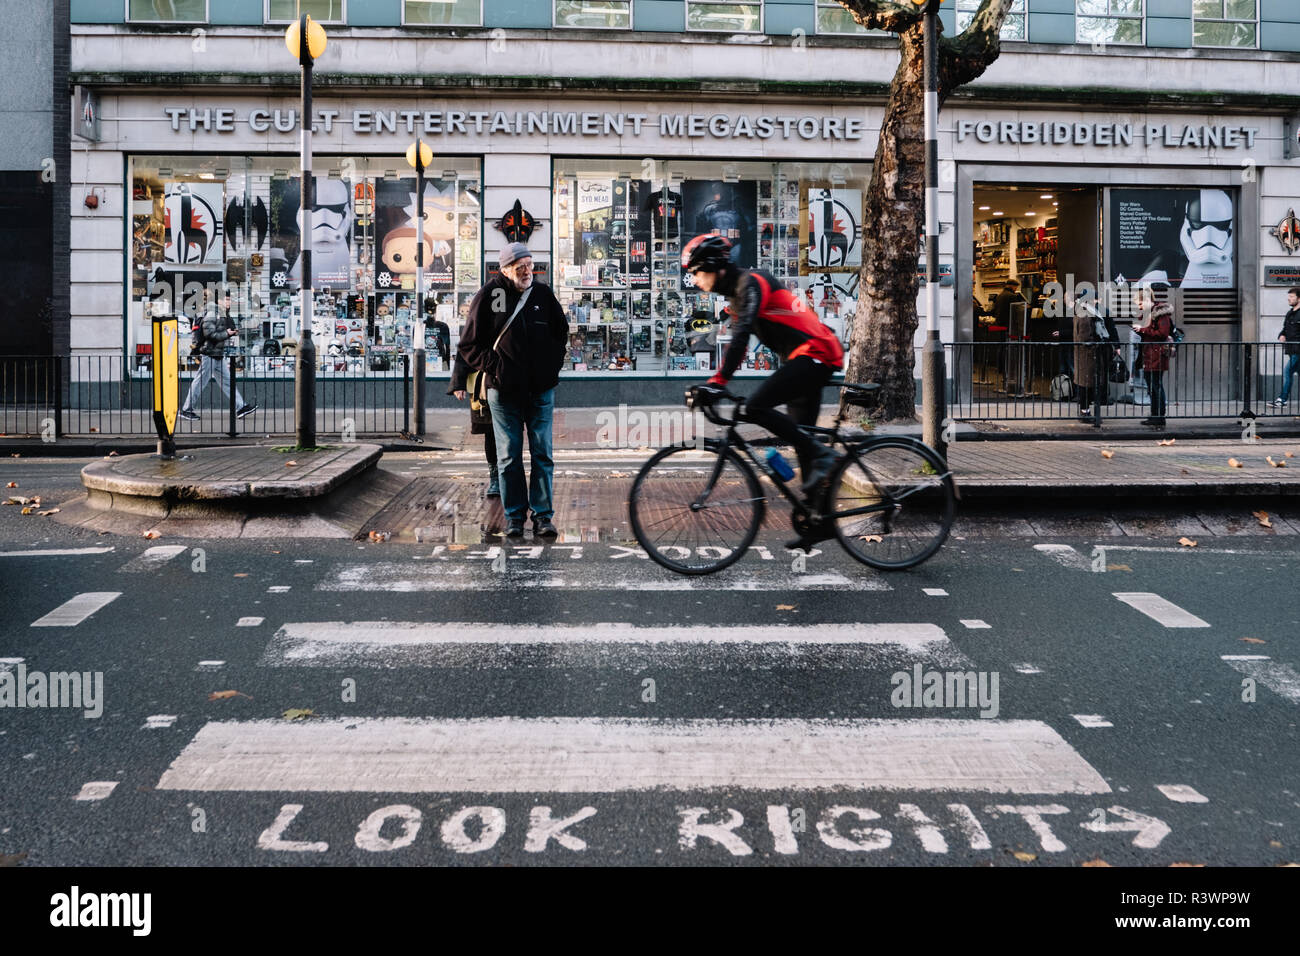 Image couleur de passage piétons à l'extérieur de Planète interdite boutique de Londres avec un cycliste et un piéton. Banque D'Images